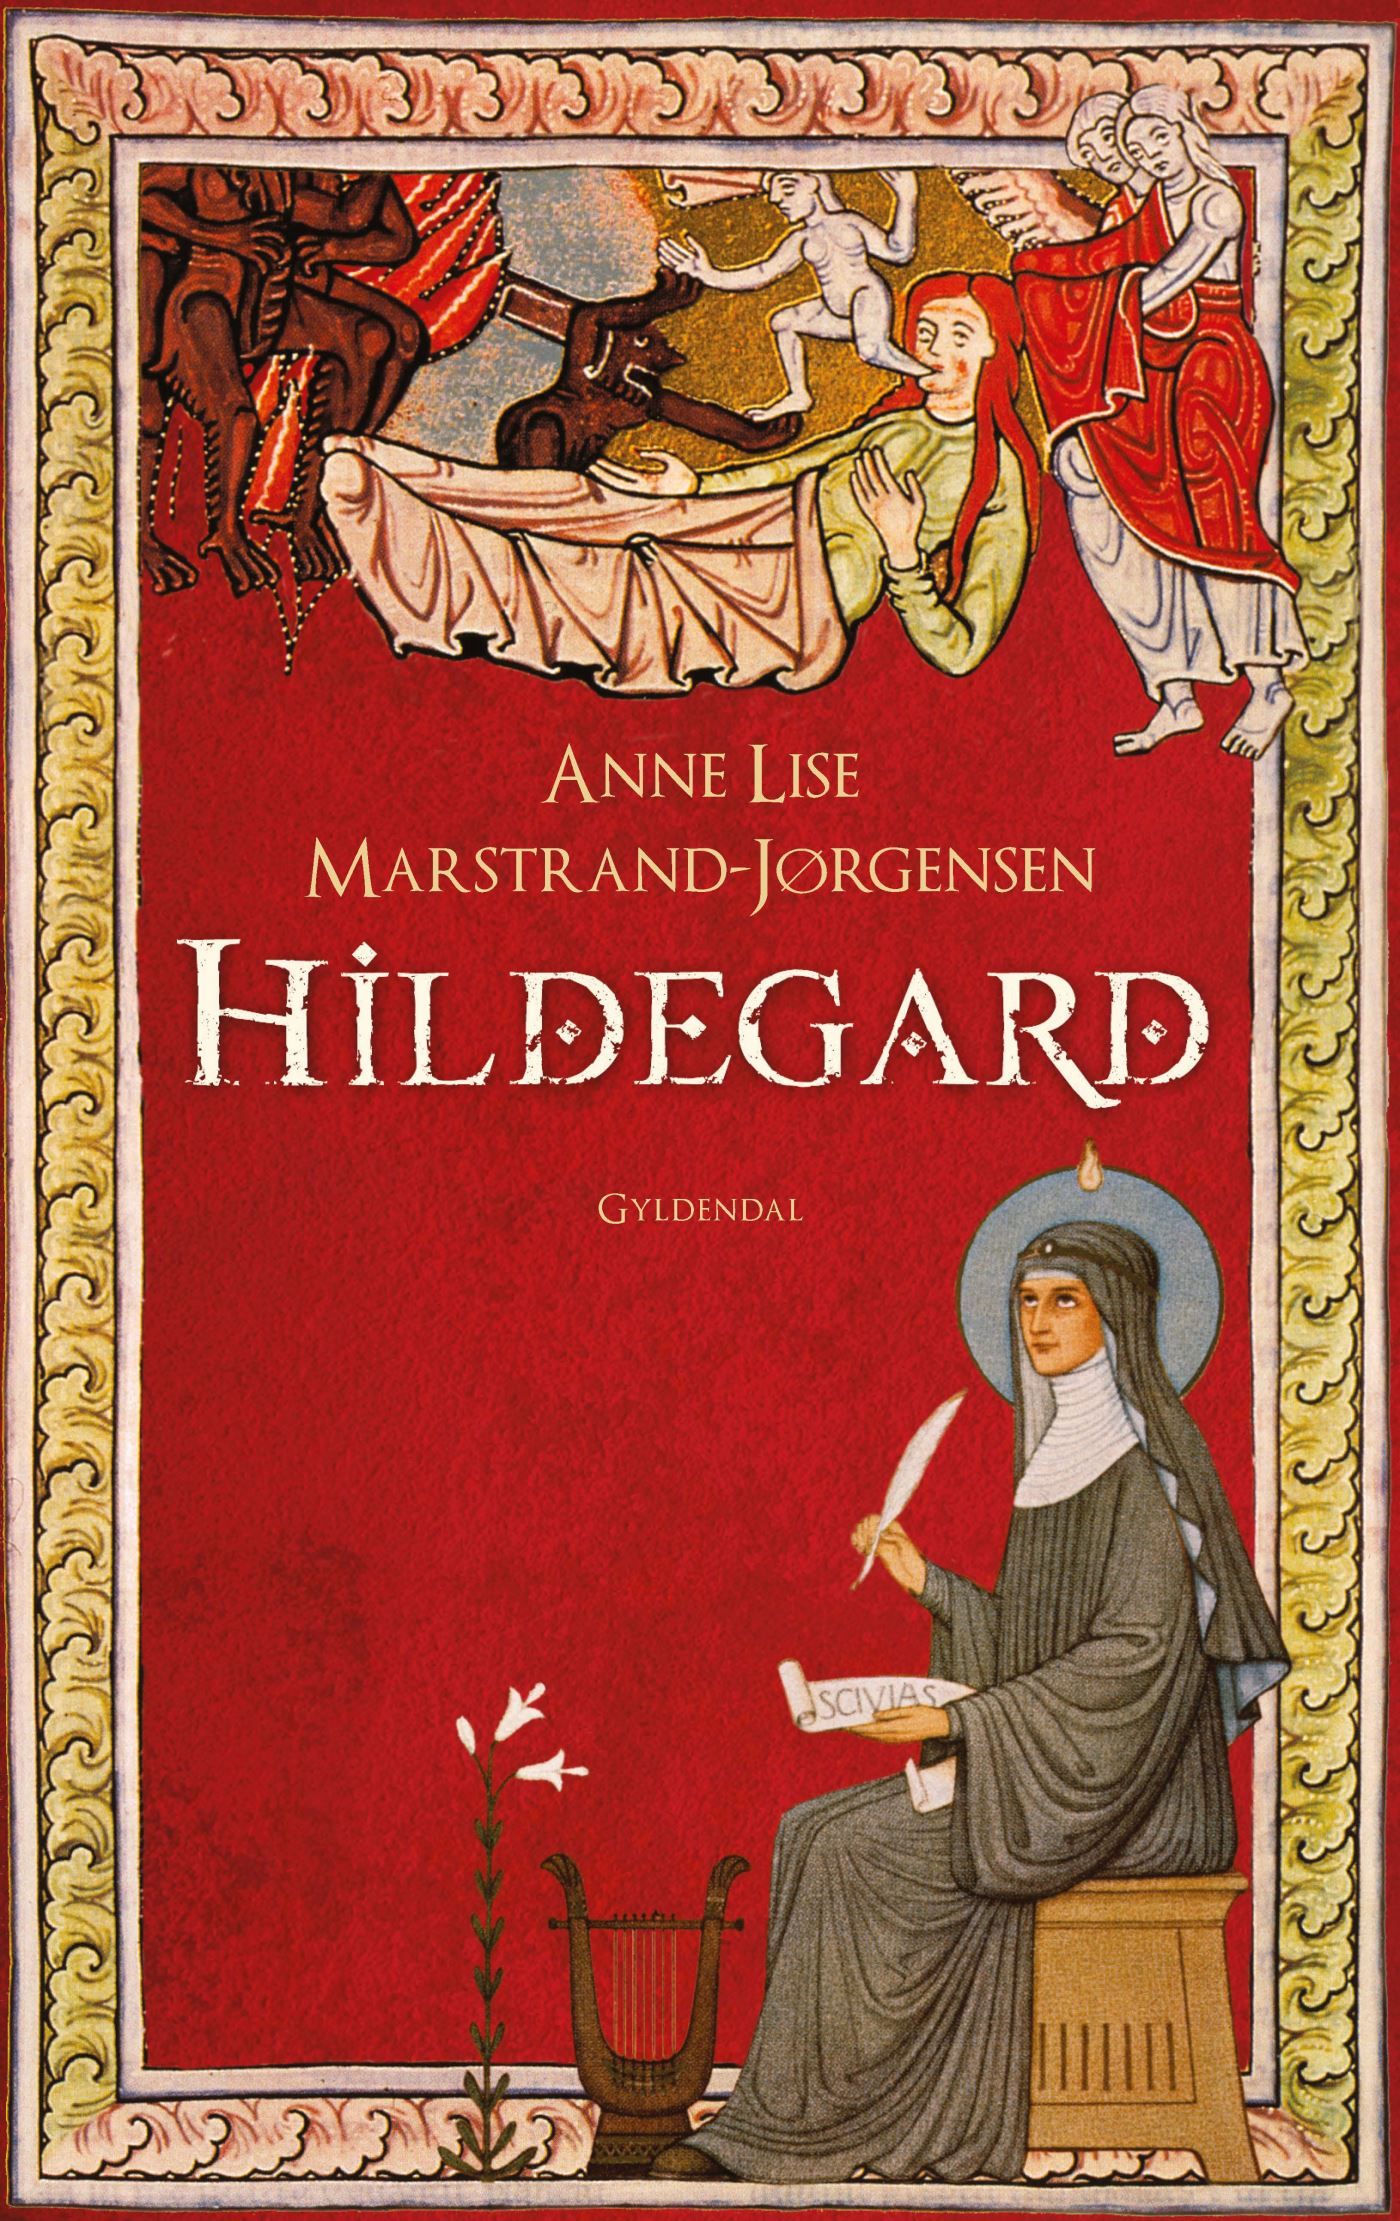 Hildegard, e-bok av Anne Lise Marstrand-Jørgensen